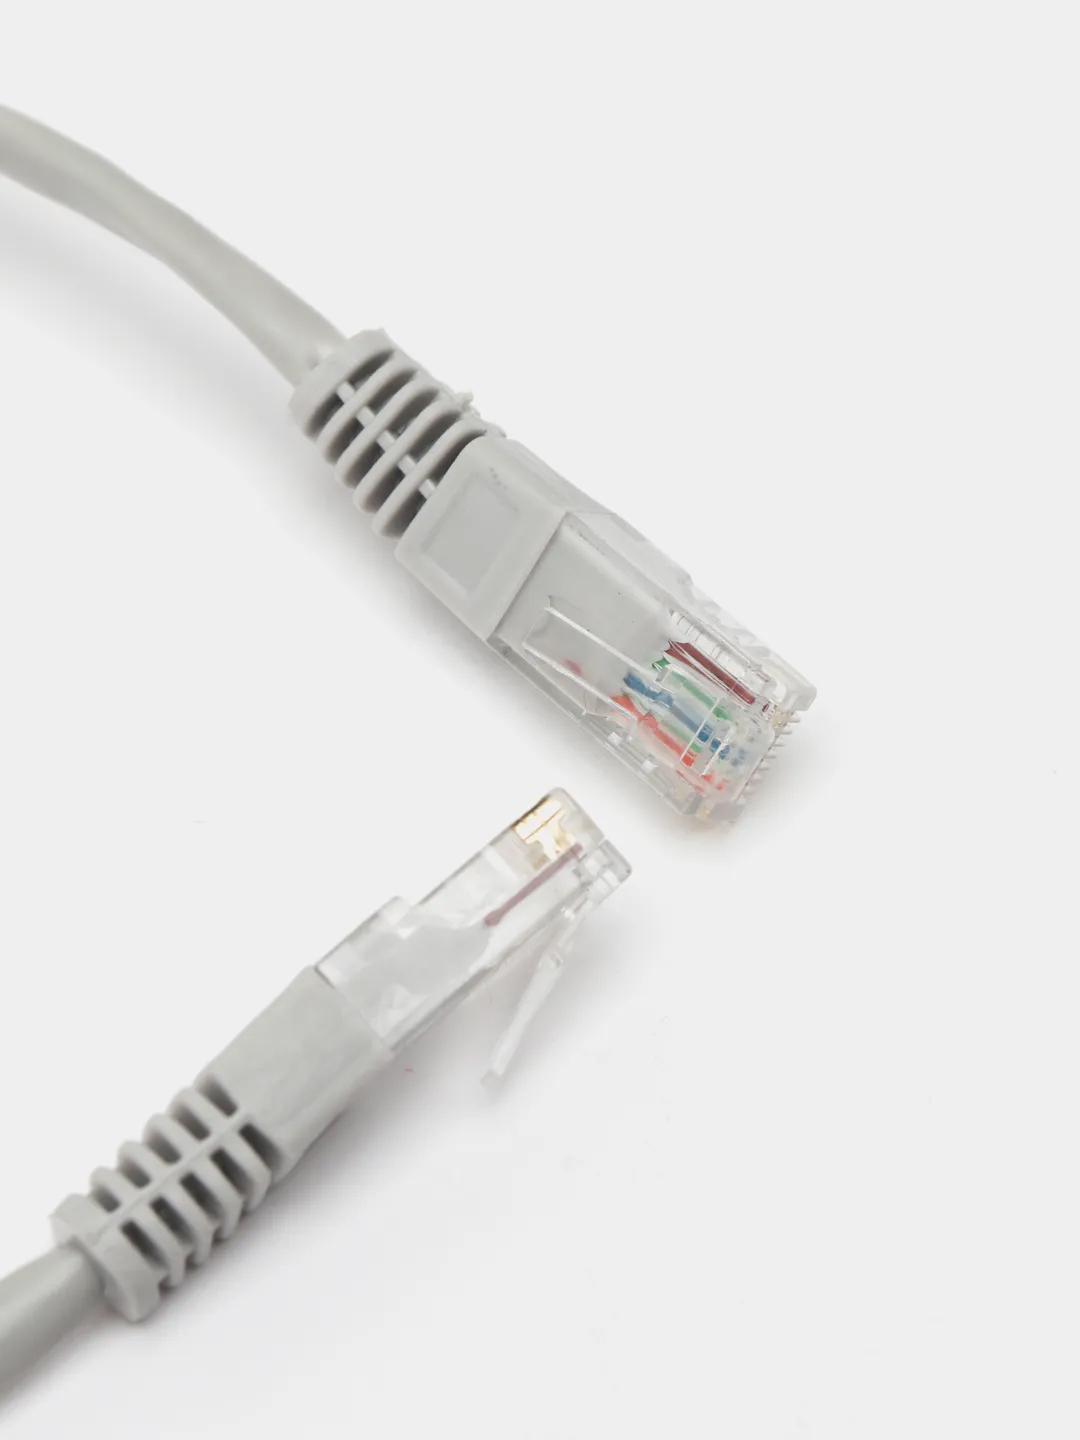  кабель 9 метров LAN UTP для интернета патч-корд RJ45 .